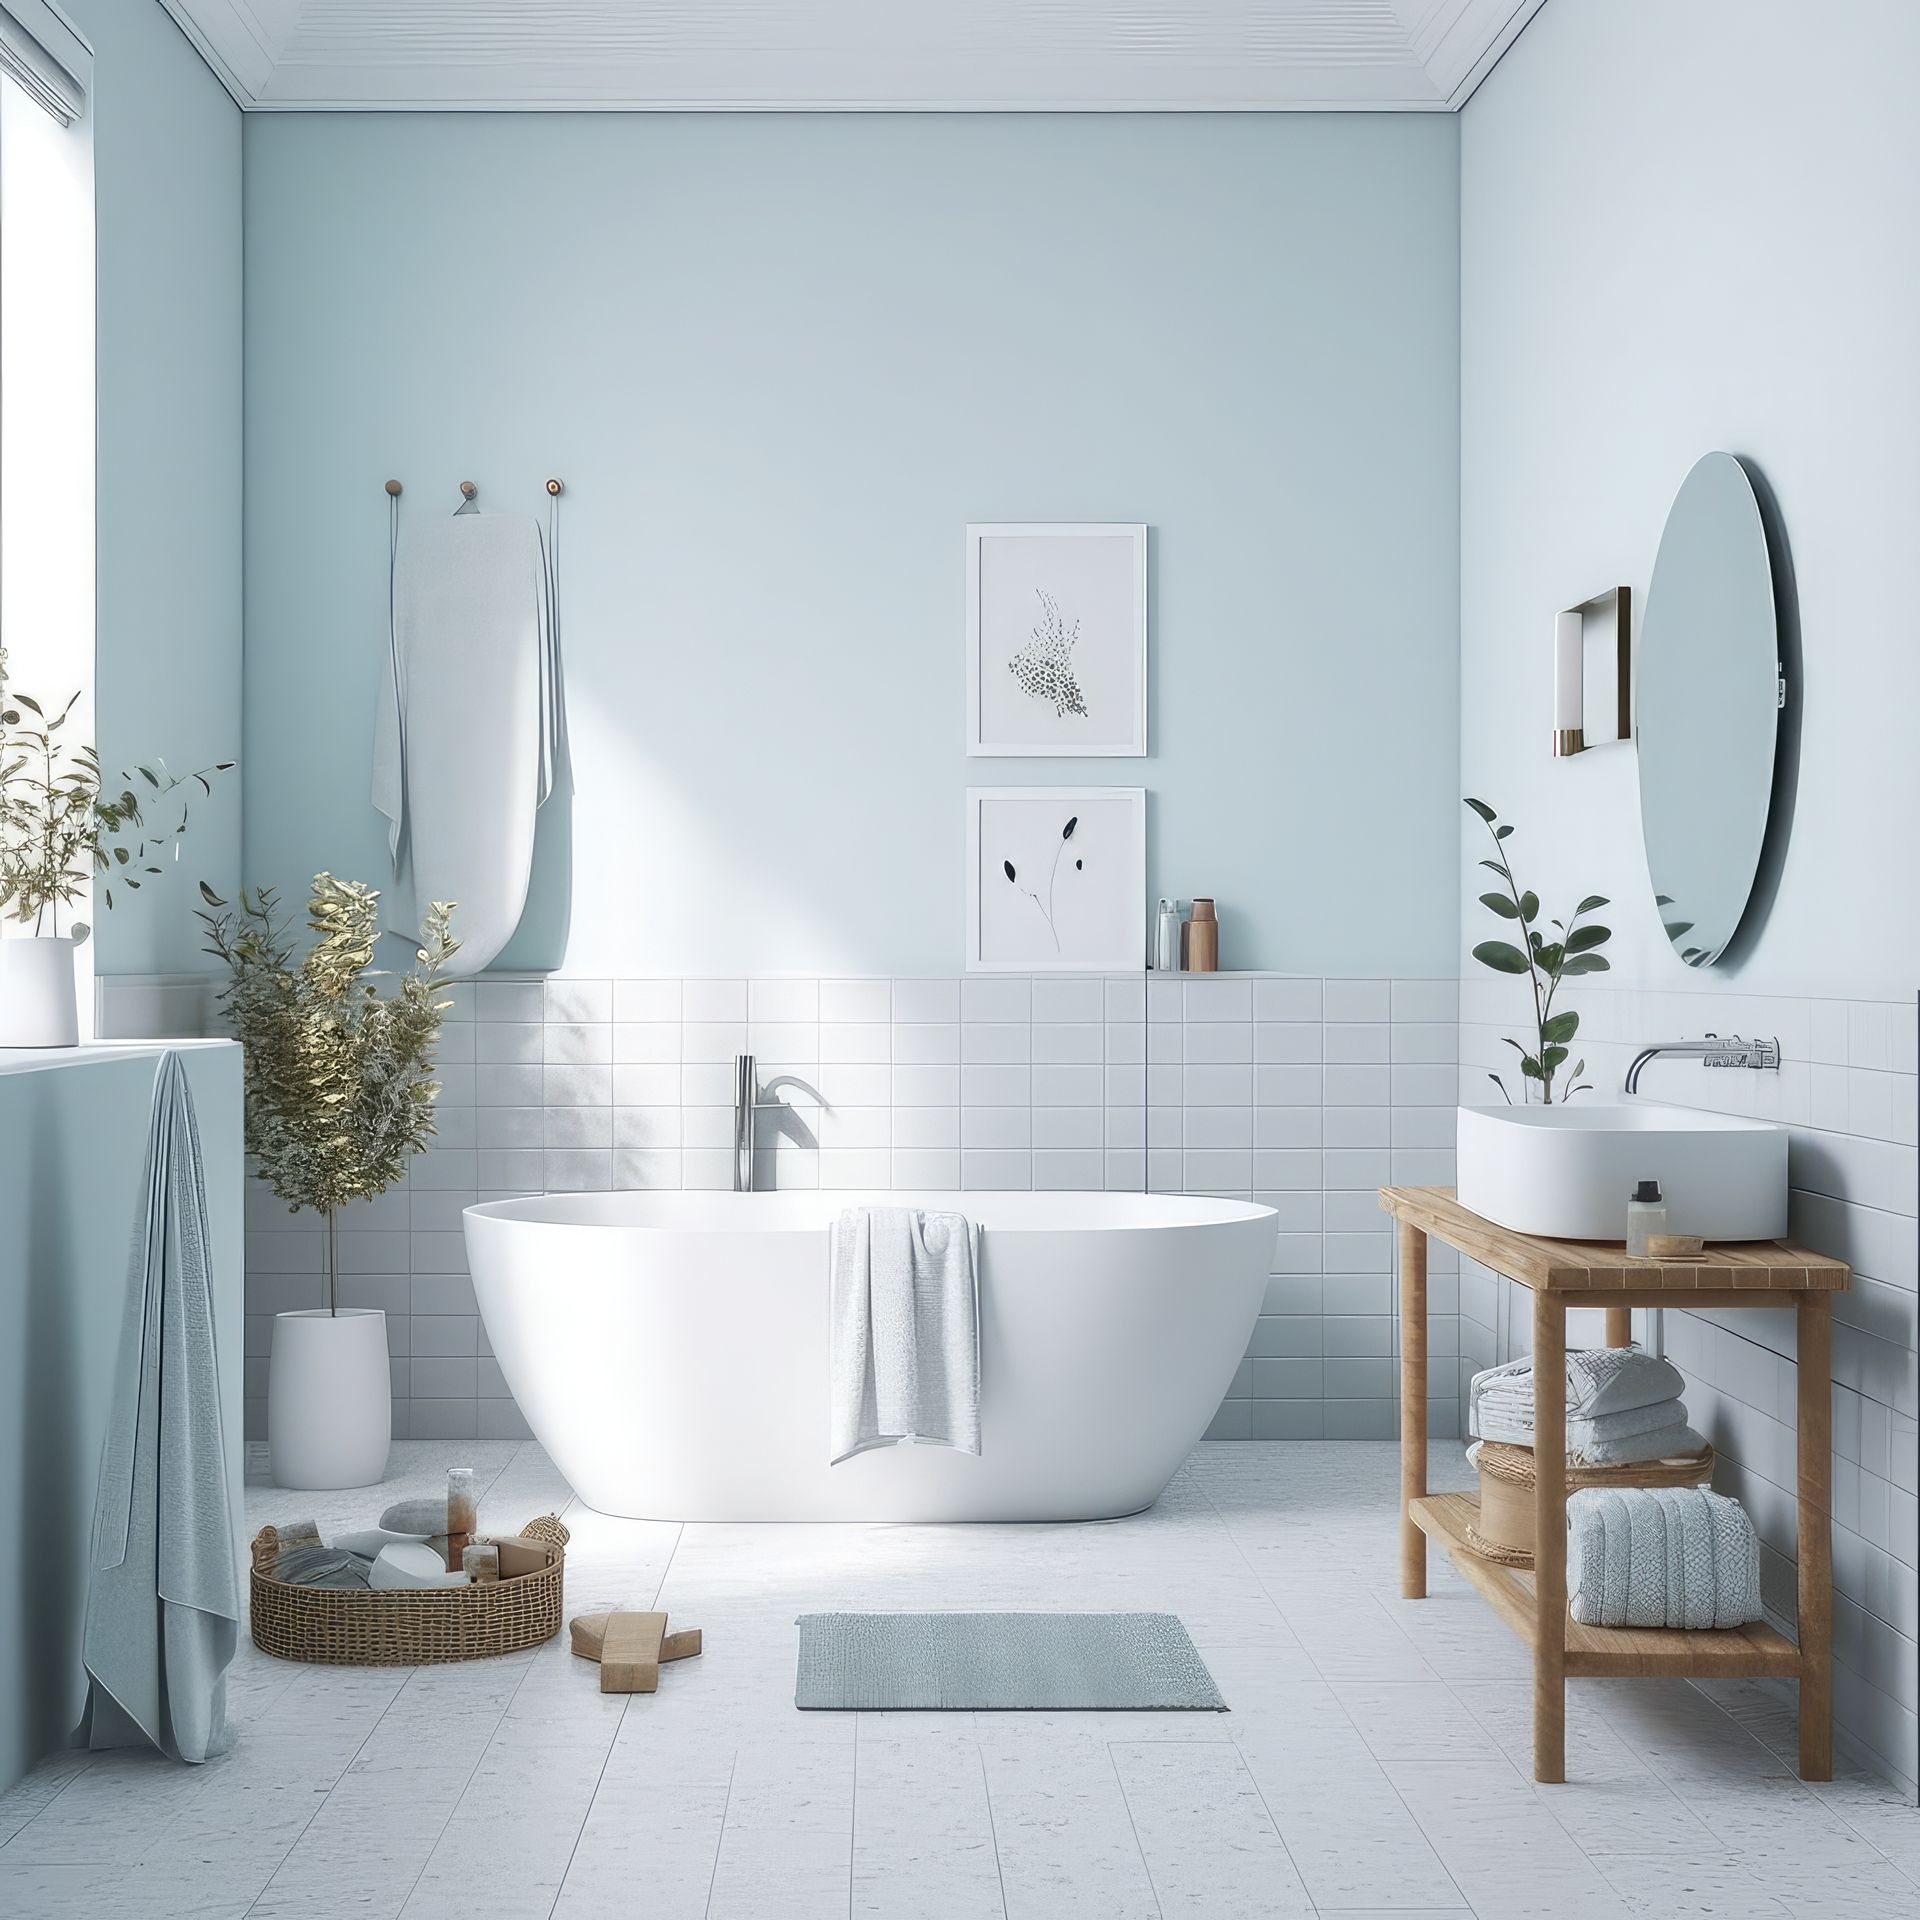 Une salle de bains dans les tons bleu  pâle